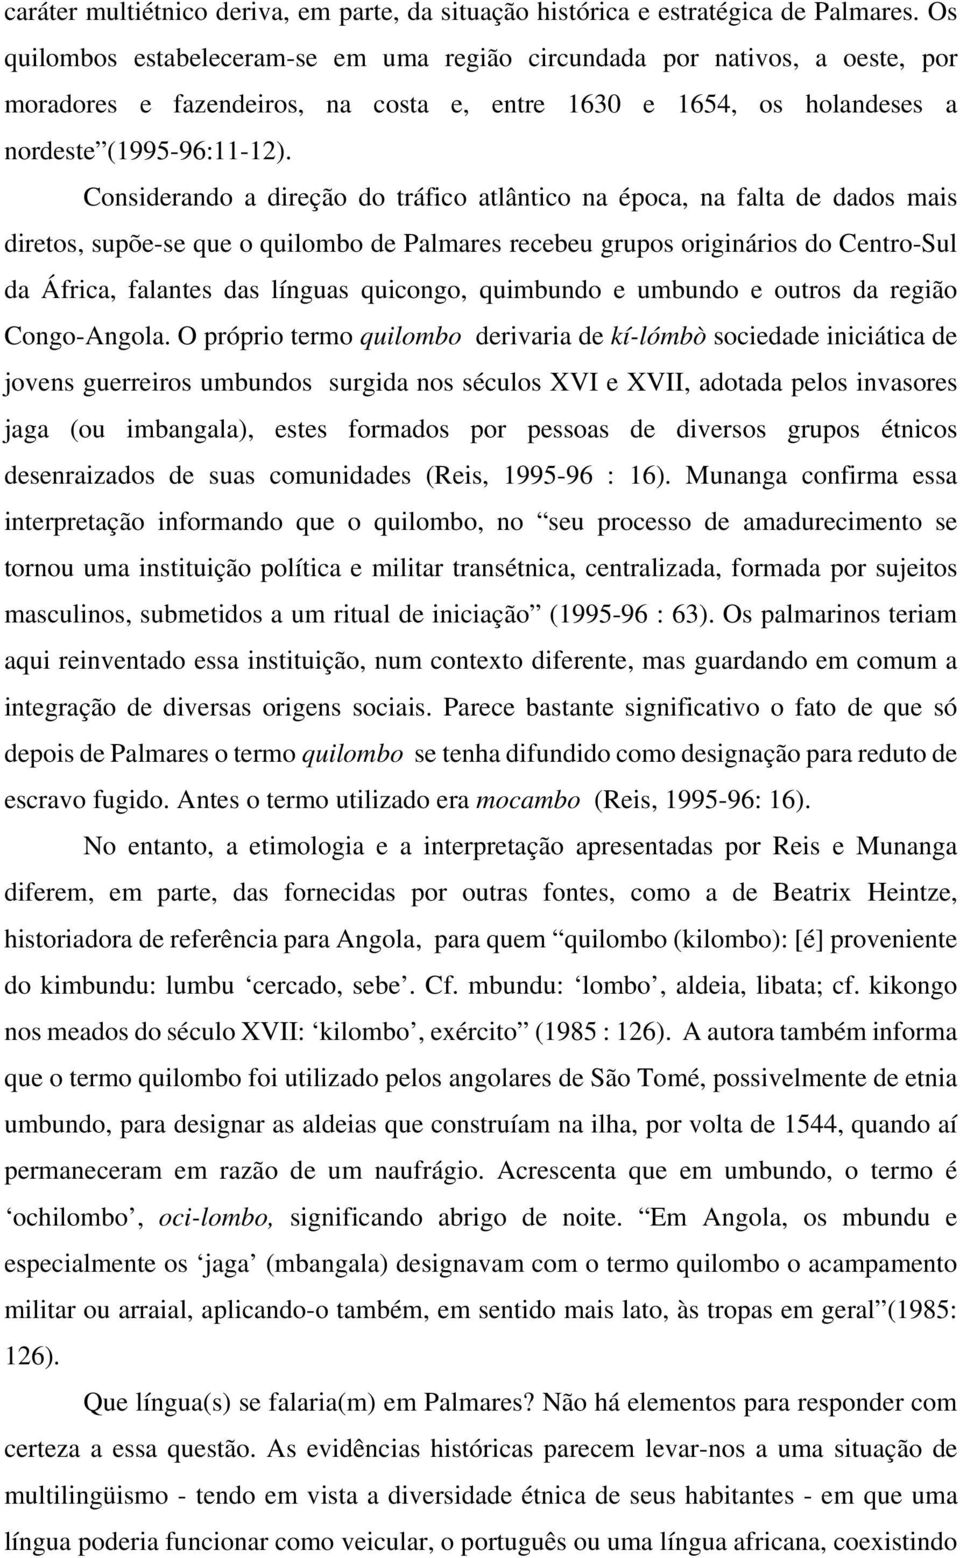 Considerando a direção do tráfico atlântico na época, na falta de dados mais diretos, supõe-se que o quilombo de Palmares recebeu grupos originários do Centro-Sul da África, falantes das línguas